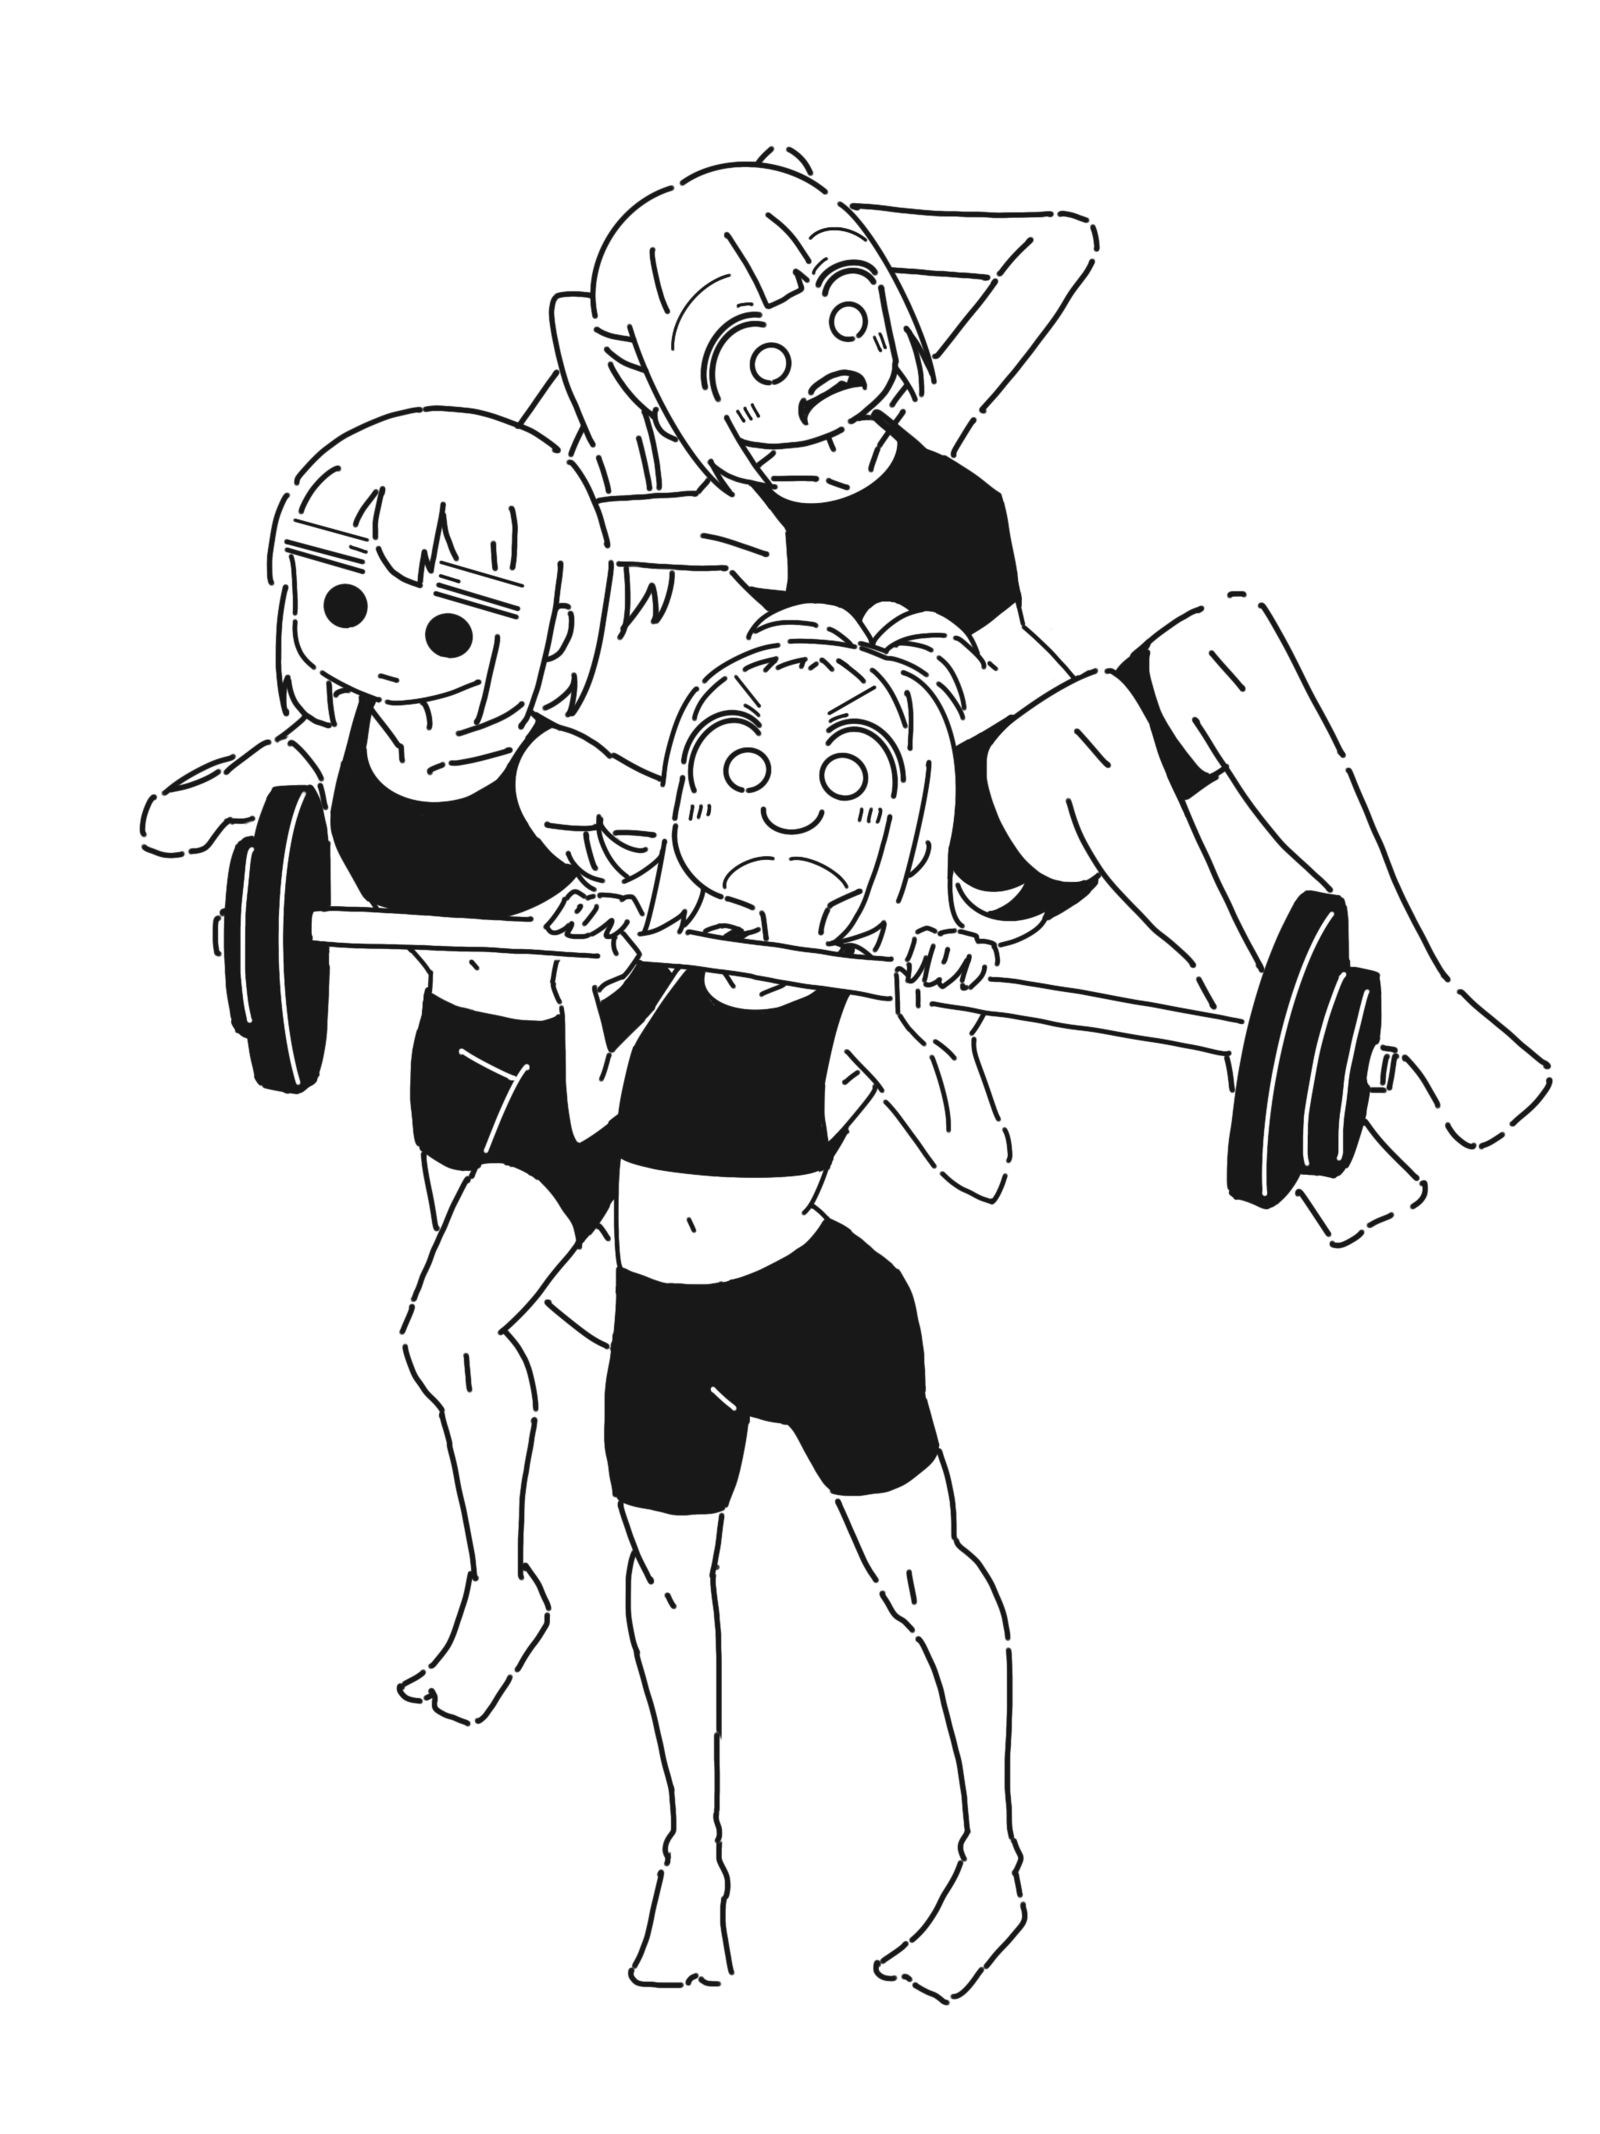 肌肉锻炼-原创女孩子